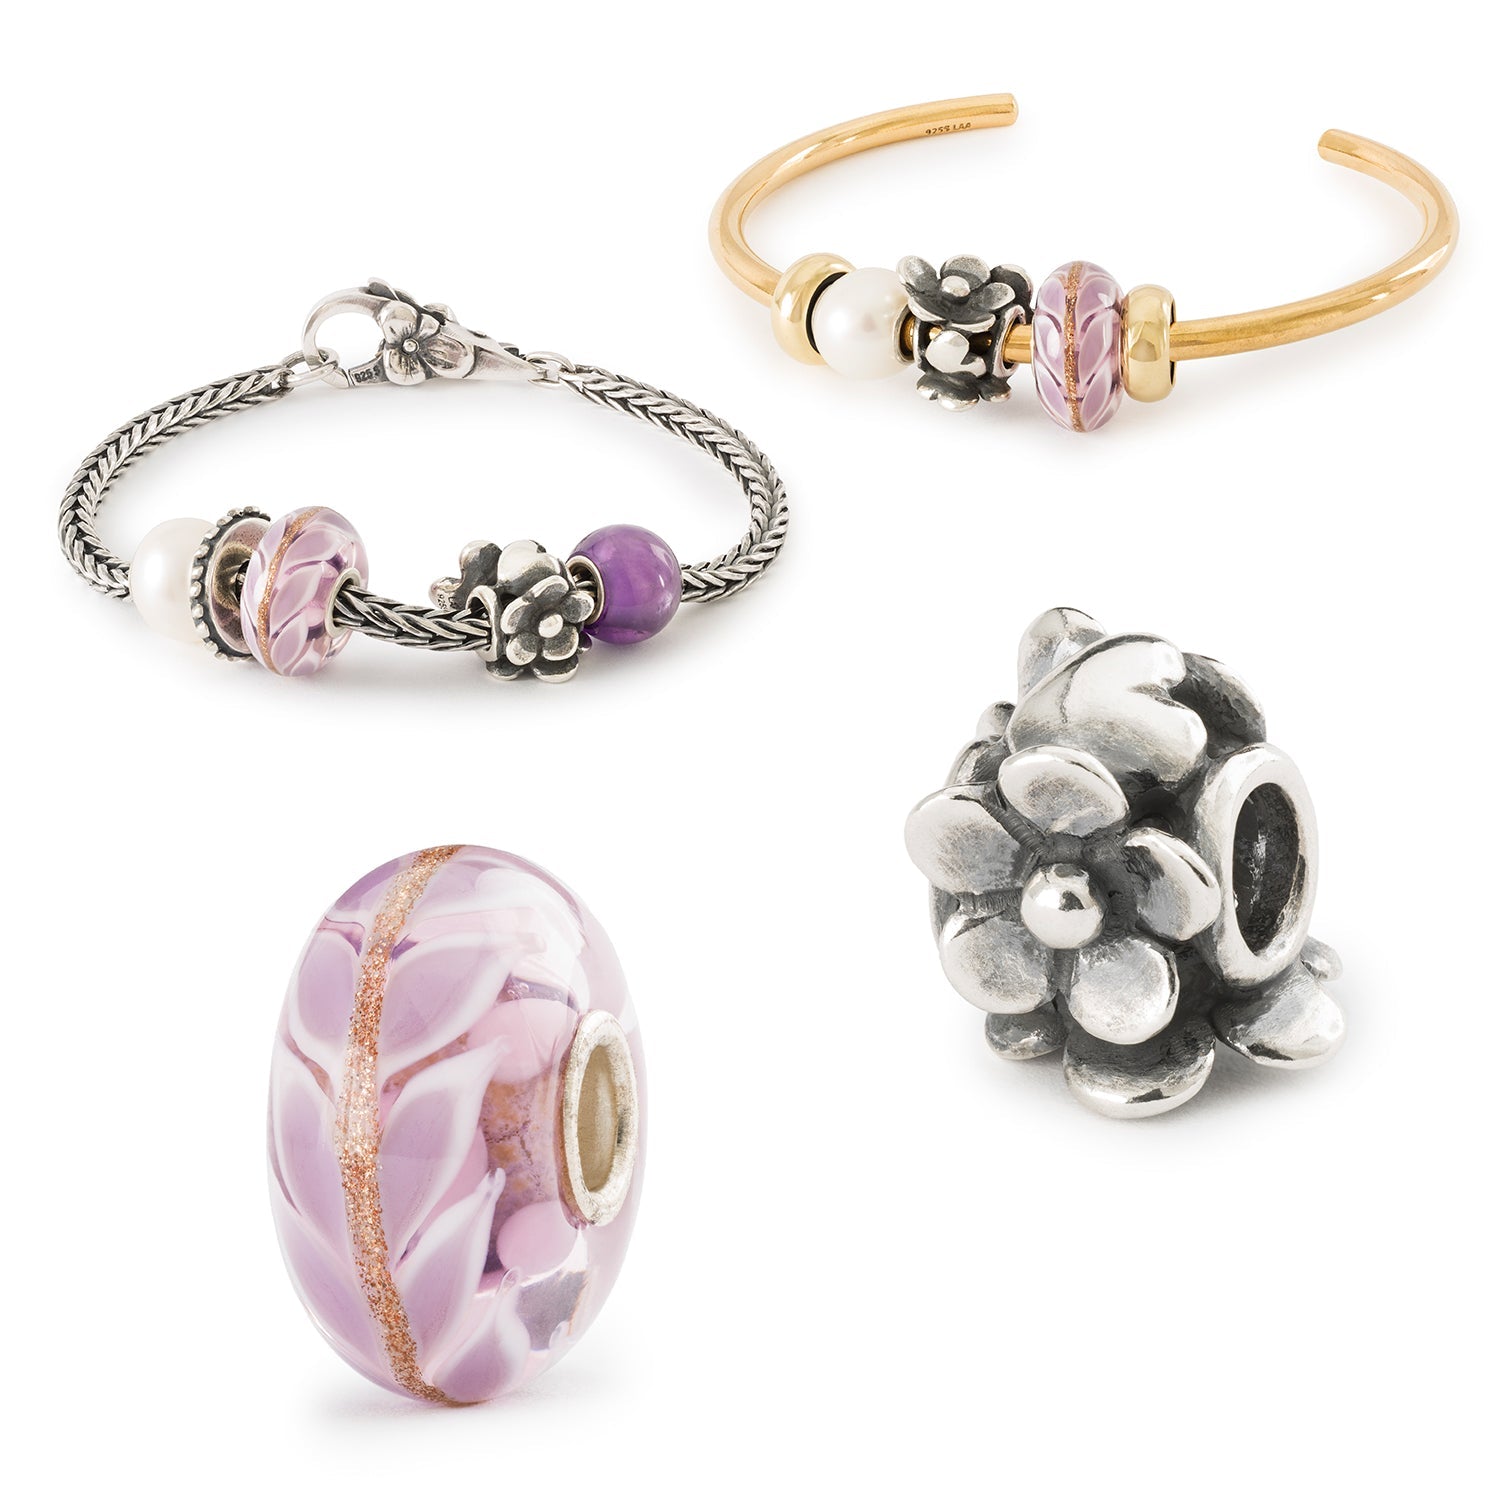 Galerie mit Trollbeads Geschenkideen für den Muttertag, Lavendelliebe Glasbead und Herzensblüte Silberbead